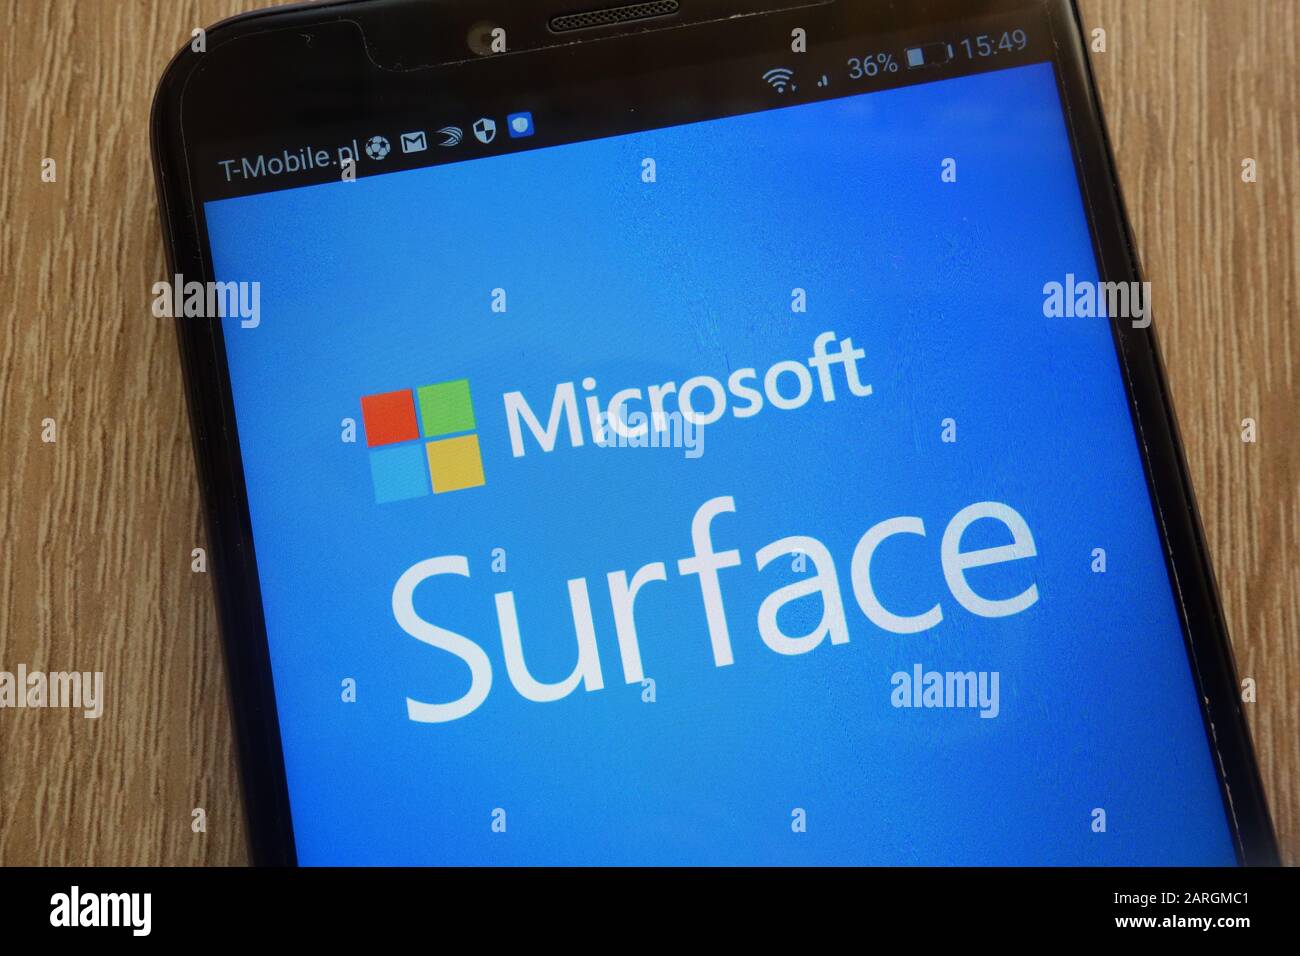 Logo Microsoft surface affiché sur un smartphone moderne Banque D'Images